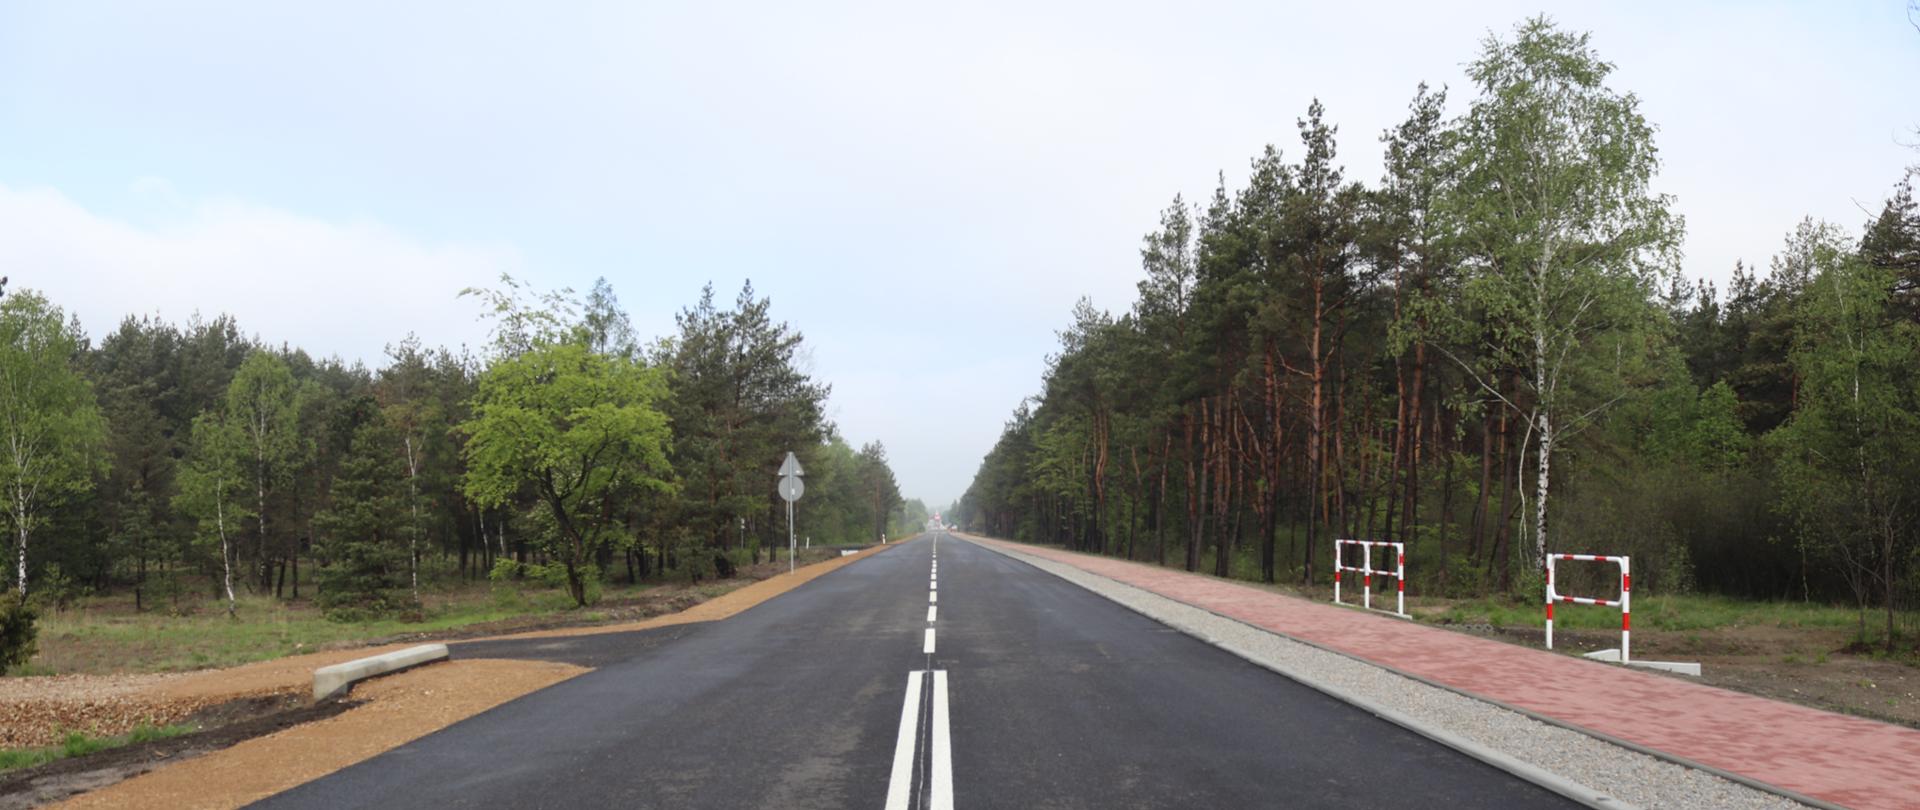 Na zdjęciu widać przebudowaną drogę, po prawej stronie jezdni znajduje się chodnik dla pieszych z czerwonej kostki. Po obu stronach jezdni rosną wysokie, zielone drzewa. 